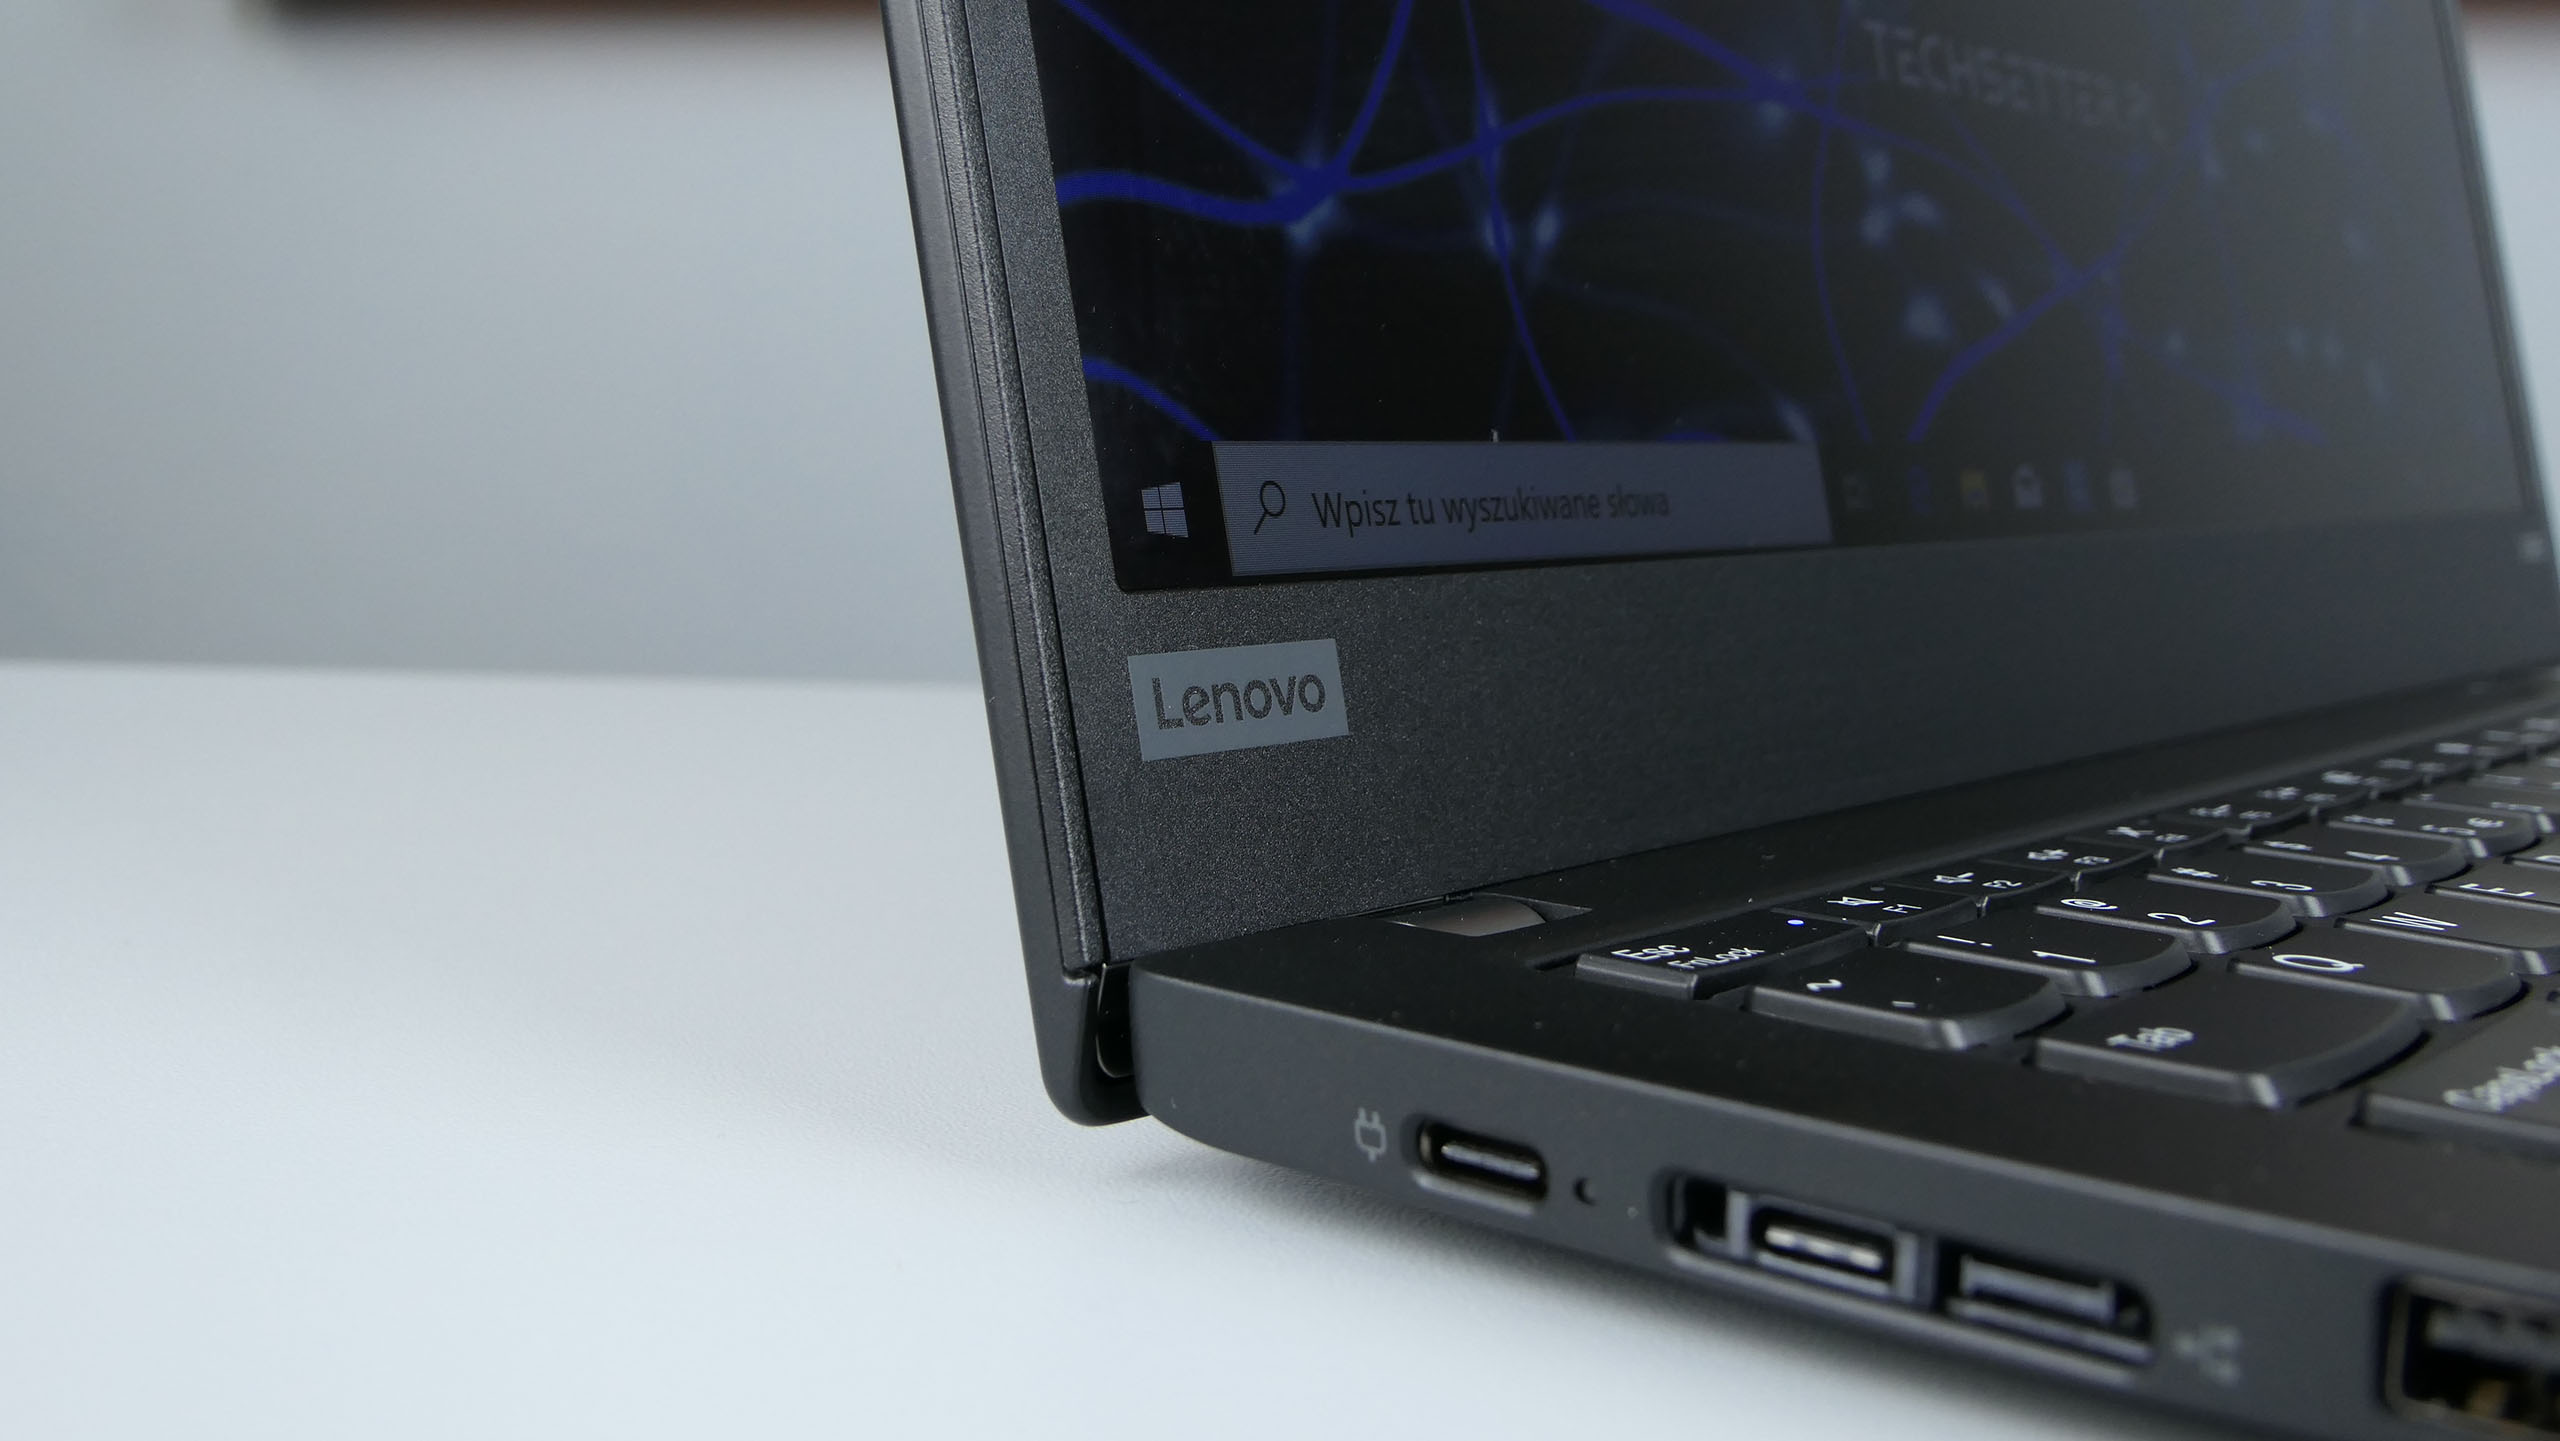 Lenovo ThinkPad X395 - dwa gniazda USB typu C, micro-LAN i USB 3.1